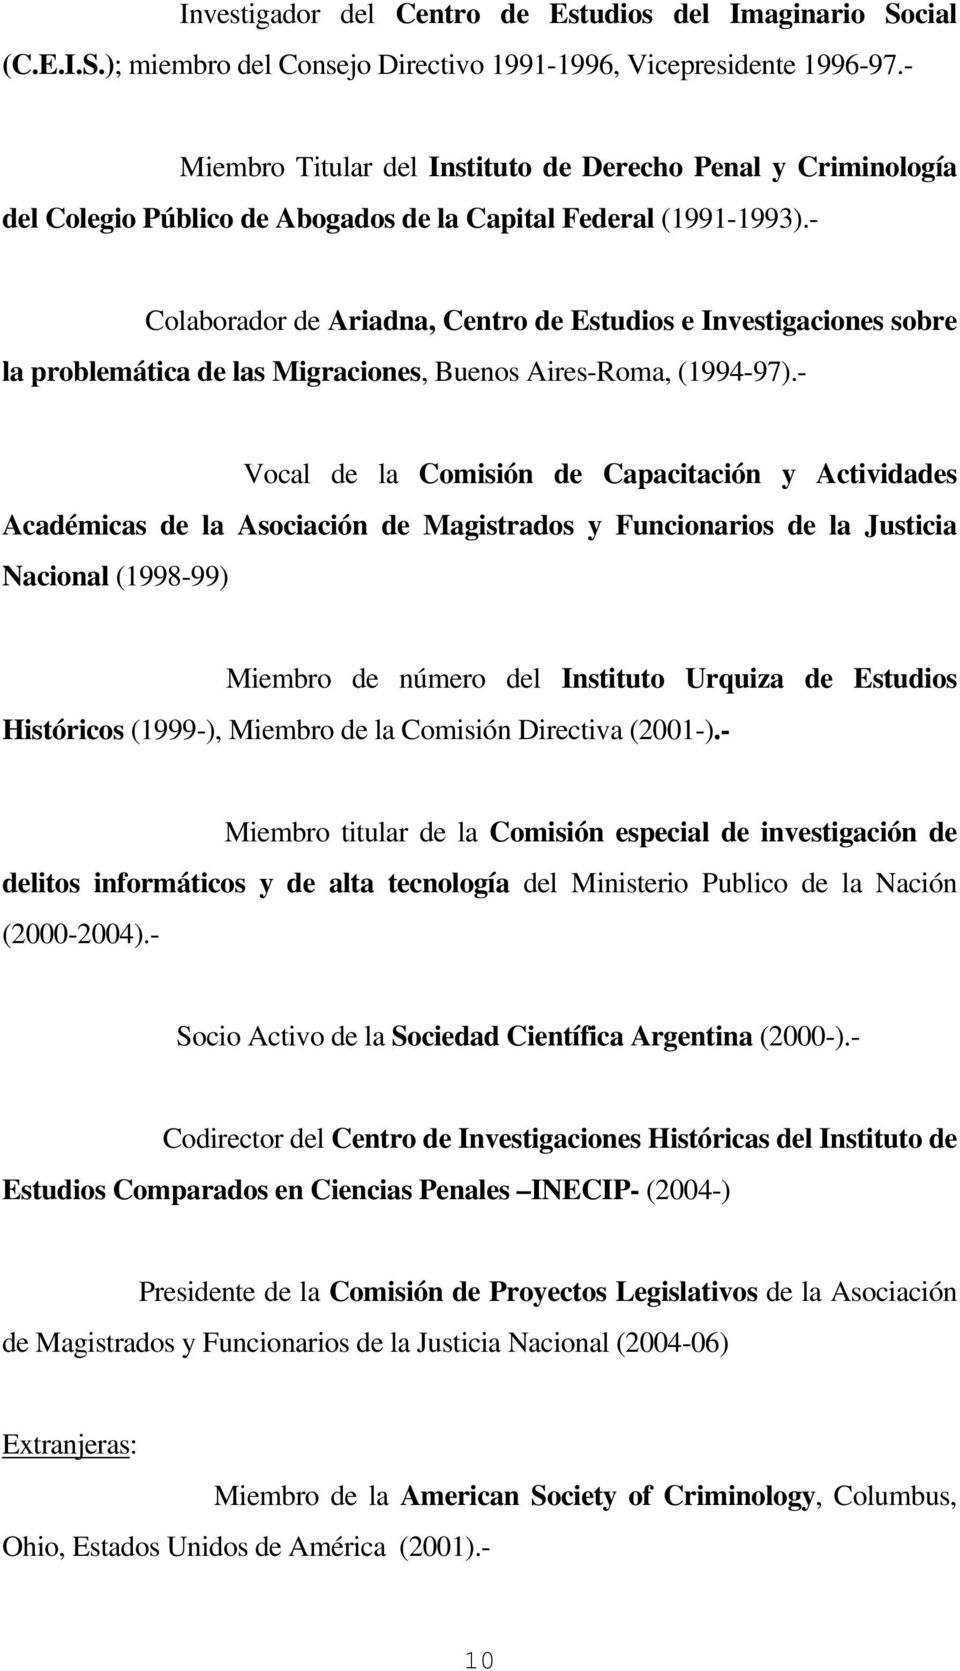 - Colaborador de Ariadna, Centro de Estudios e Investigaciones sobre la problemática de las Migraciones, Buenos Aires-Roma, (1994-97).